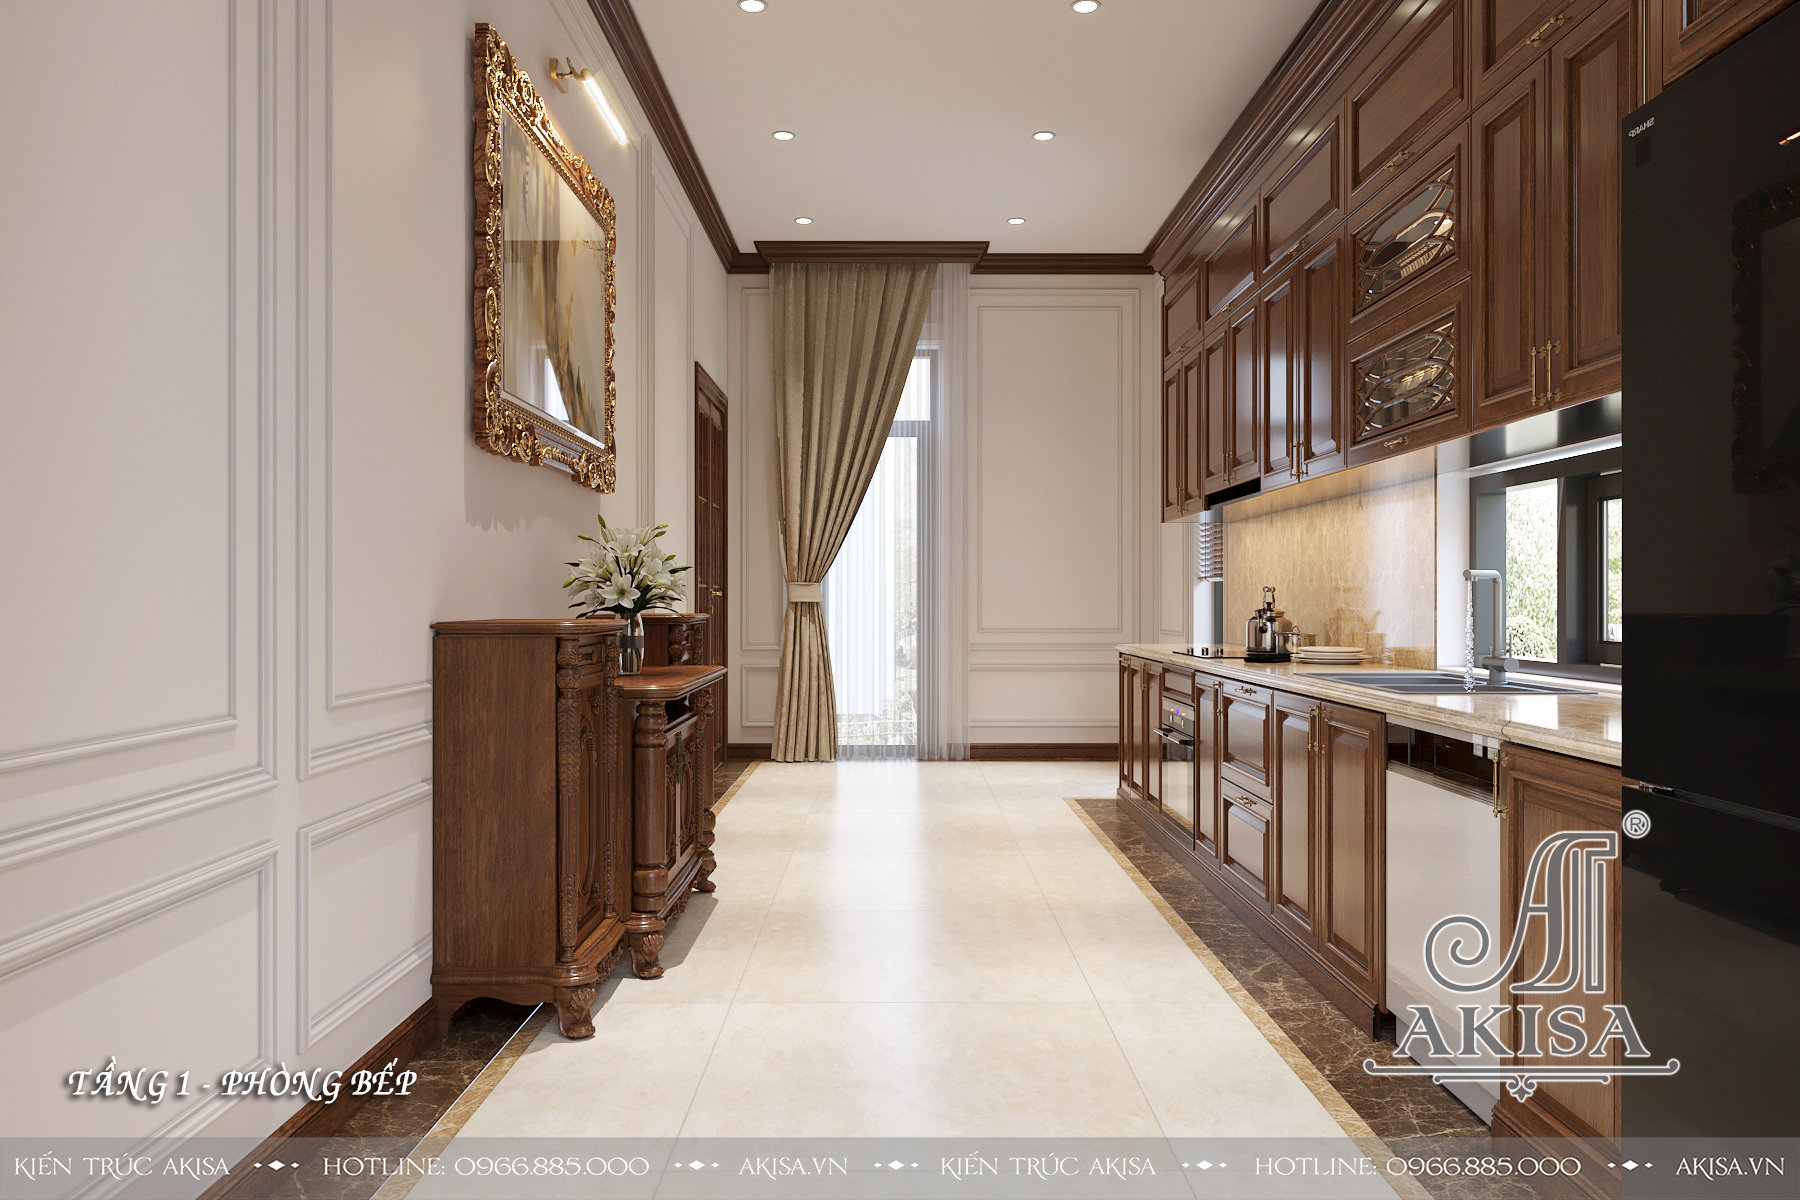 Thiết kế nội thất phong cách tân cổ điển nhẹ nhàng - Phòng bếp ăn